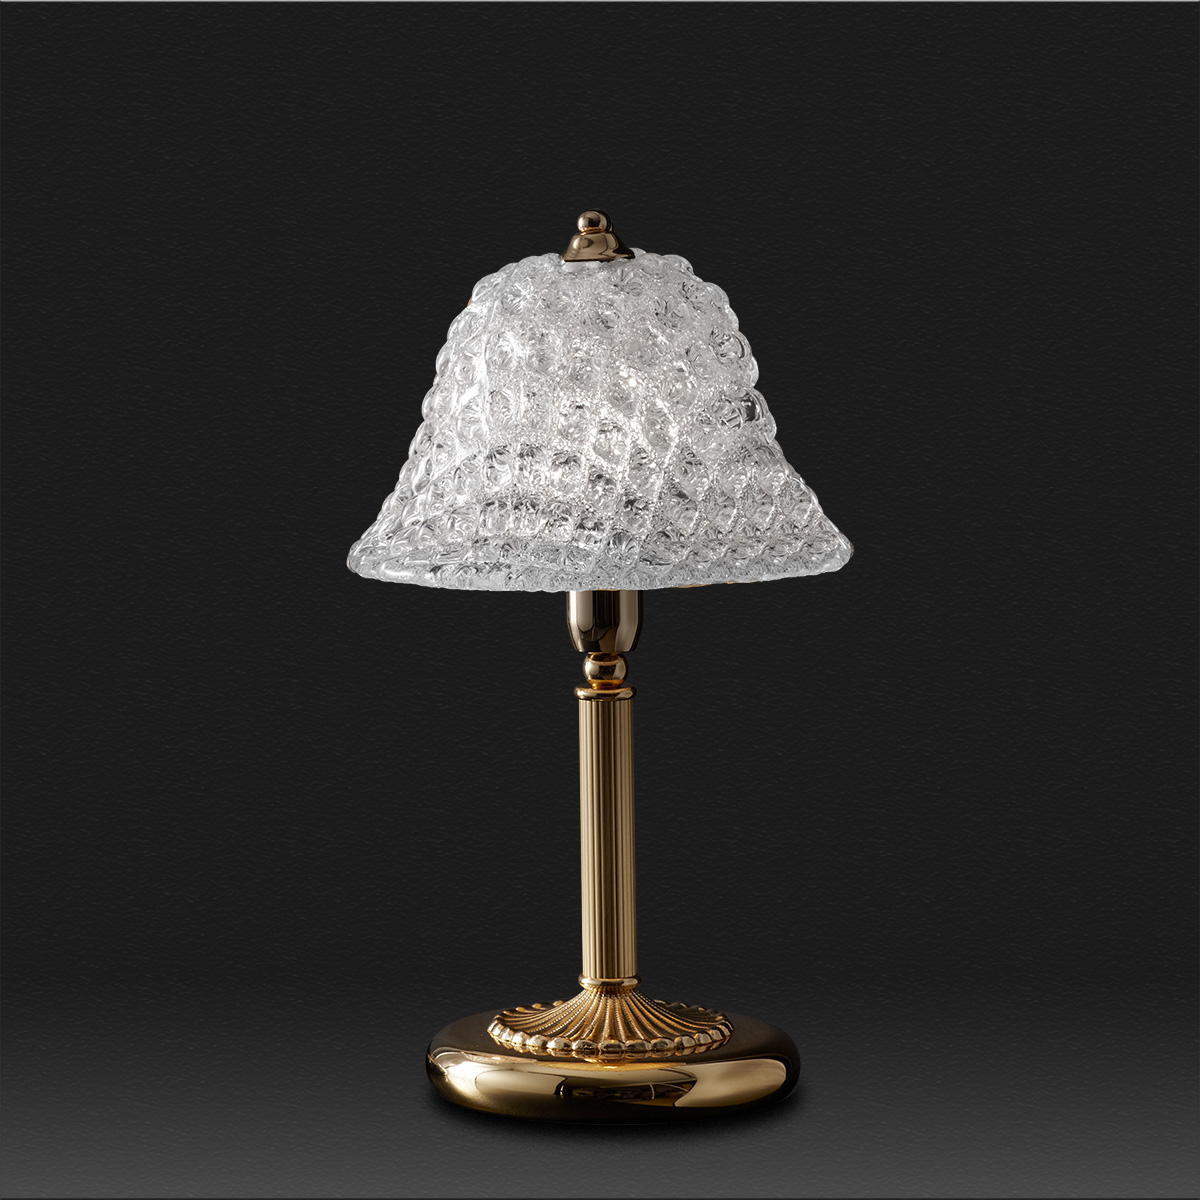 Επιτραπέζιο φωτιστικό με κρύσταλλο Μουράνο QUADRI classic table lamp